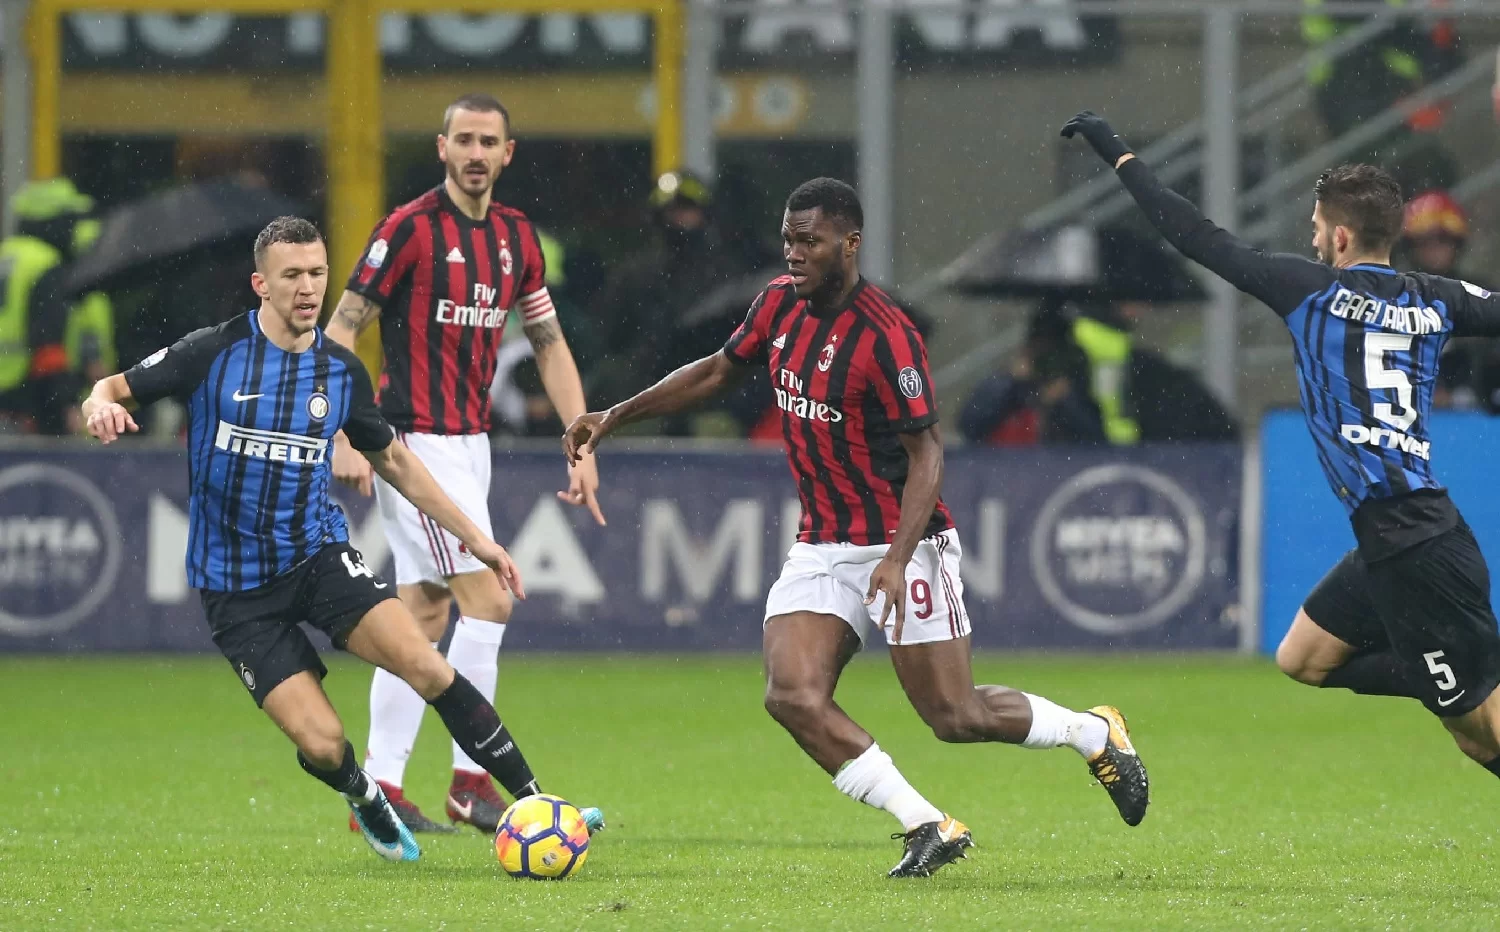 Serie A, Kessié al terzo gol su rigore con la maglia del Milan e alla sua seconda doppietta